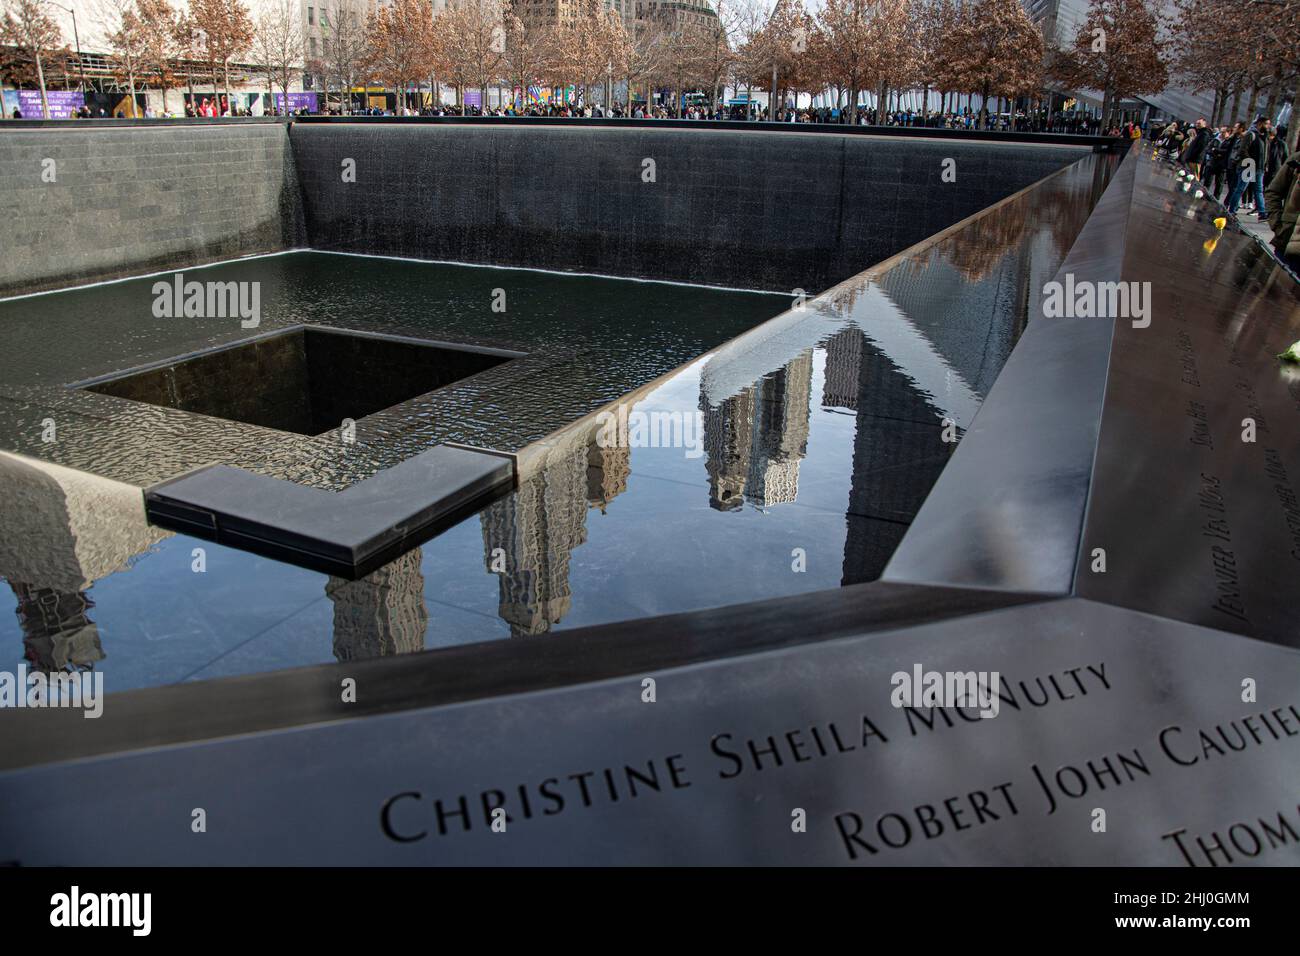 Nueva York: Die Memorial Pools mit den Namen der getöten Personen der Attentate von 9/11 Foto de stock